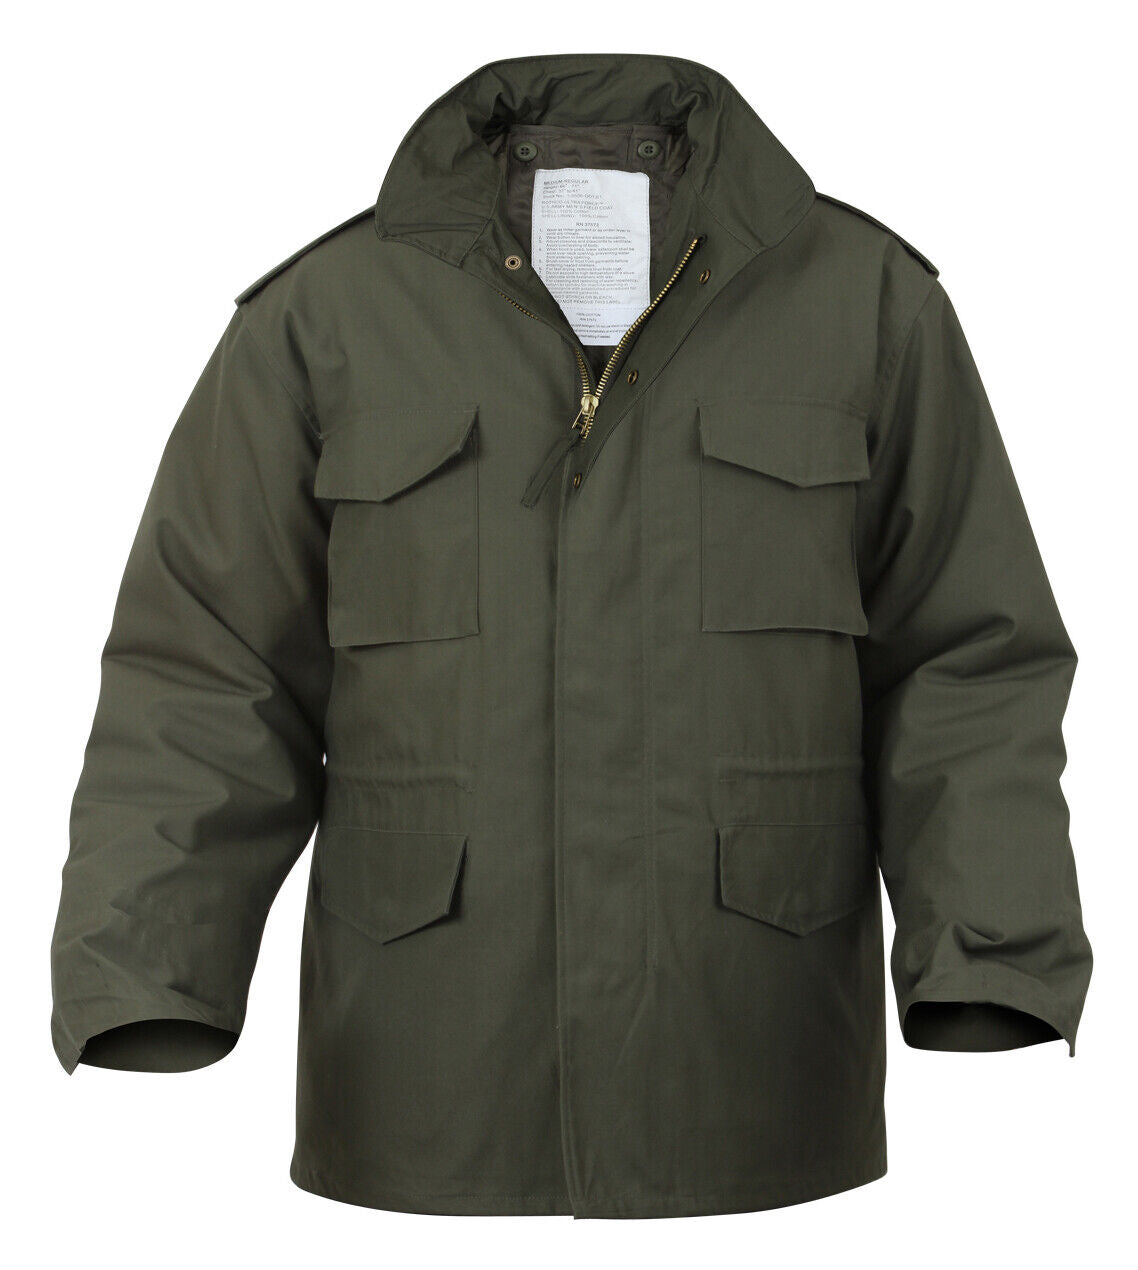 Men's Long Length M-65 Field Jacket in Winter Coat